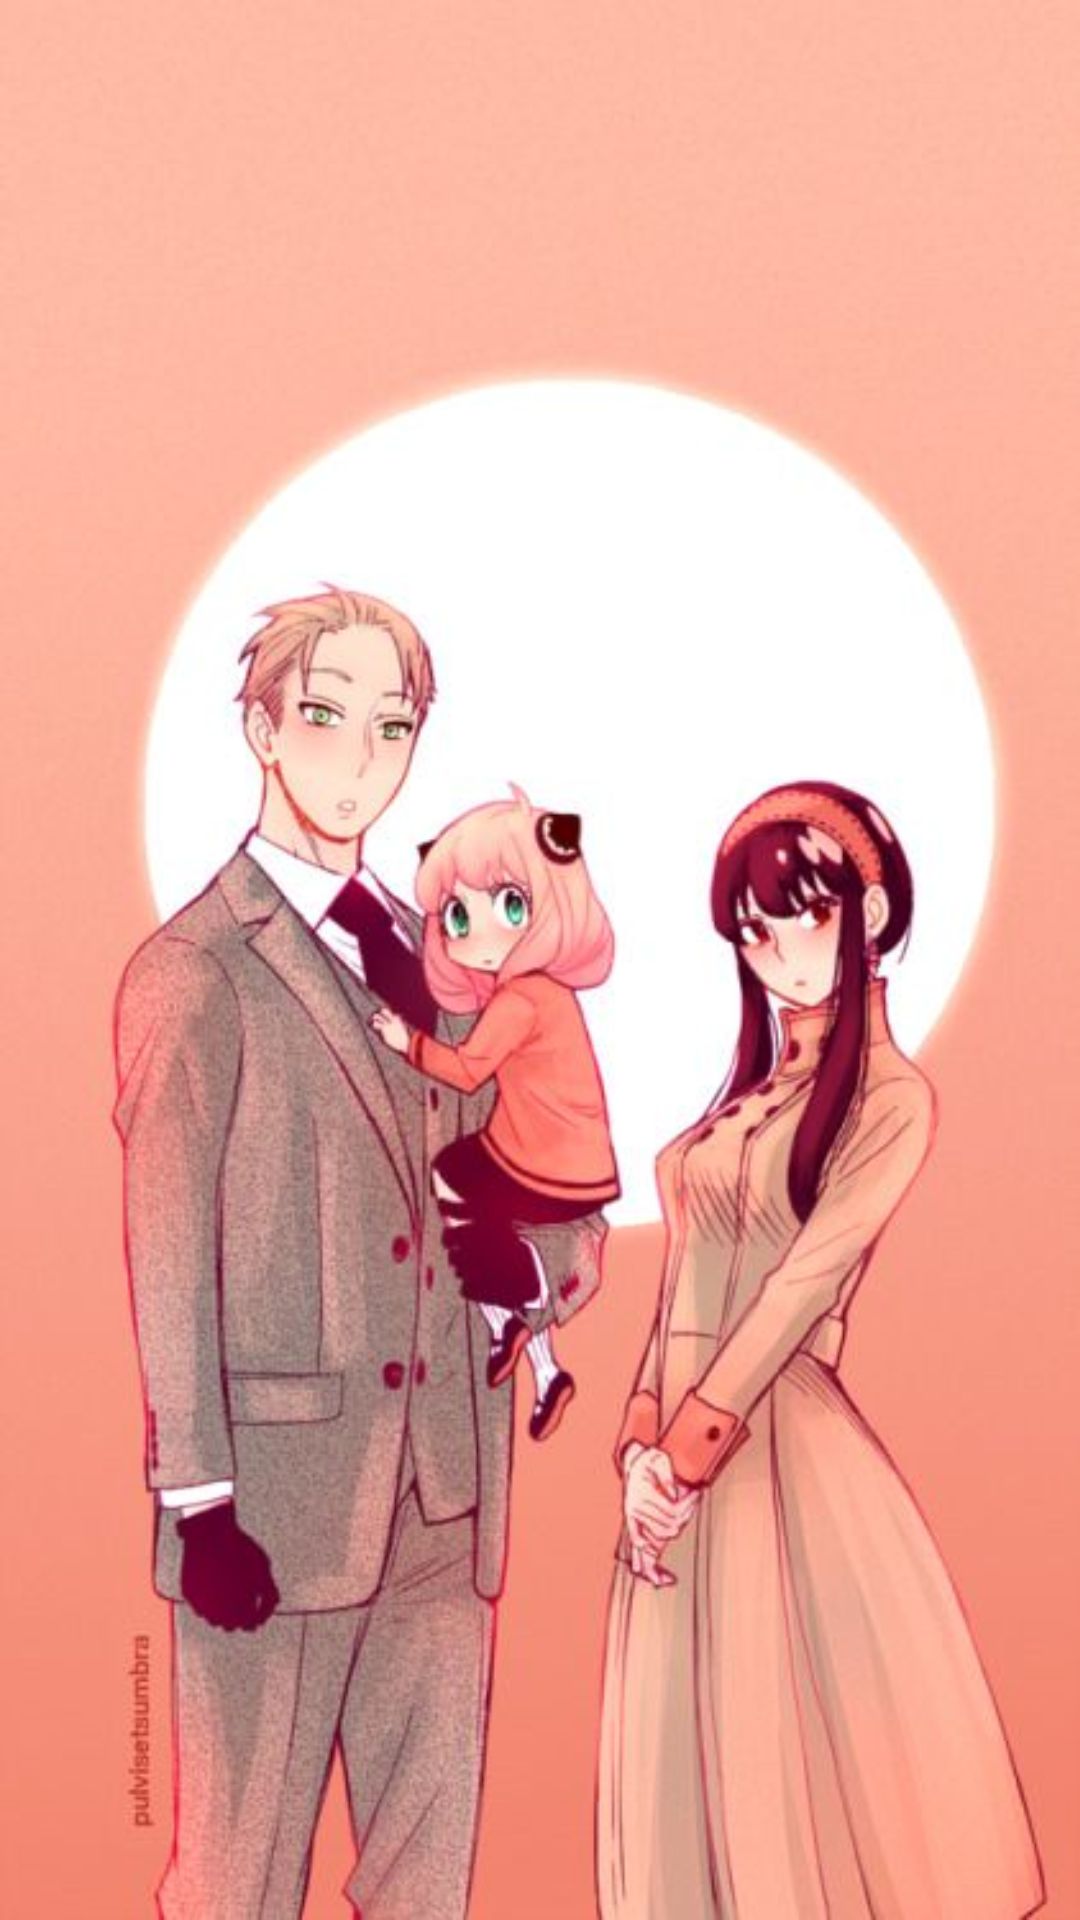 Spy × Family Wallpaper